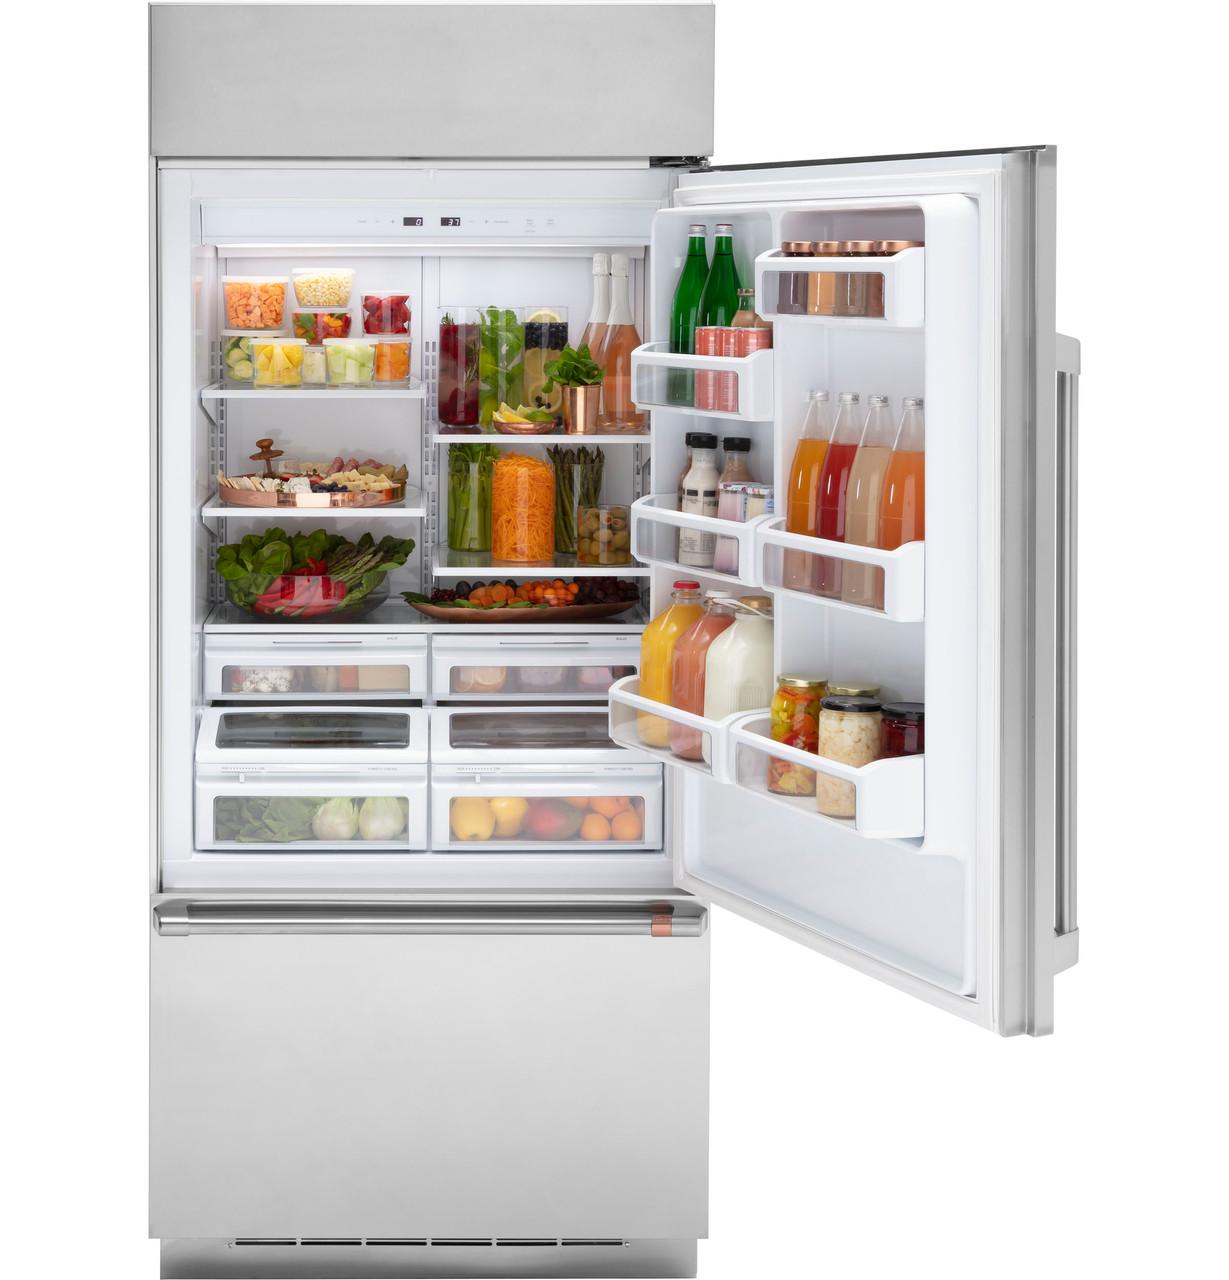 Cafe Caf(eback)™ 21.3 Cu. Ft. Built-In Bottom-Freezer Refrigerator